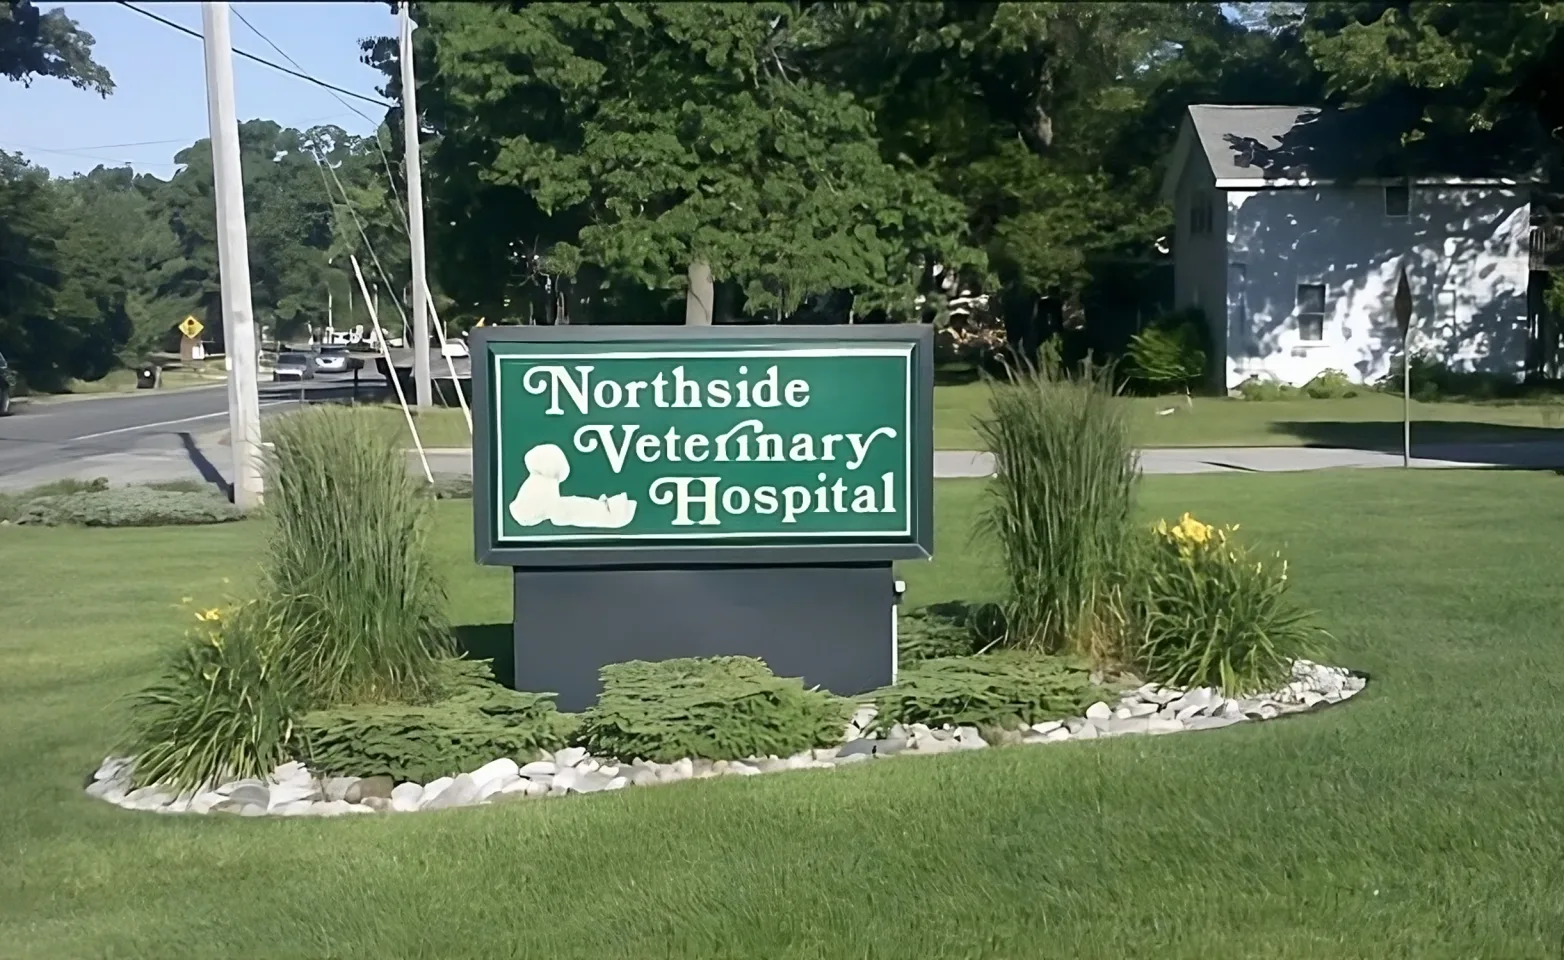 Northside Veterinary Hospital sign on grass